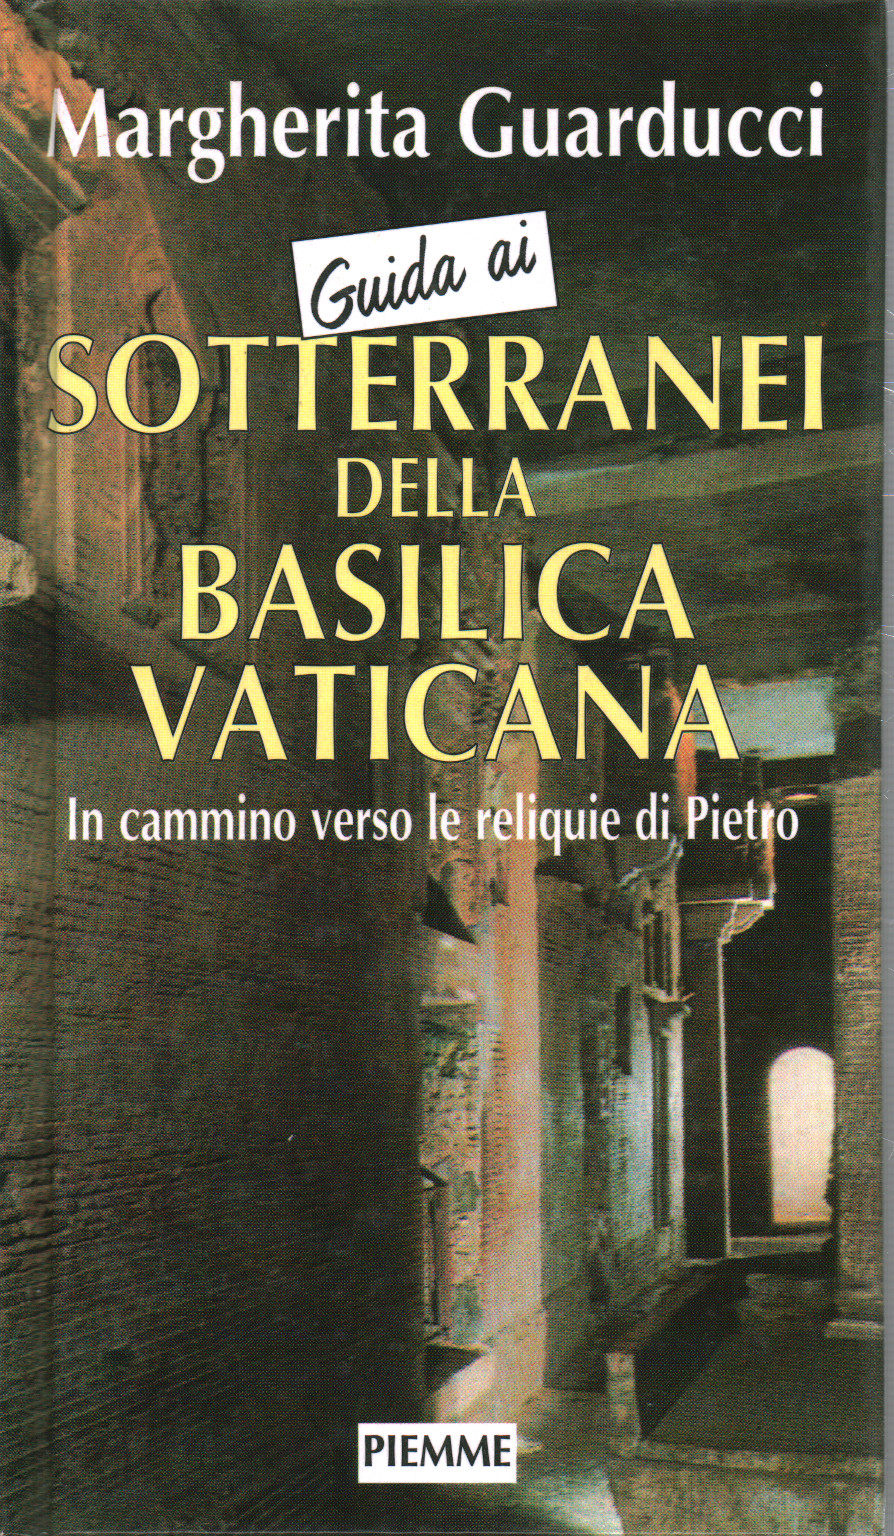 Guida ai sotteranei della Basilica Vatic